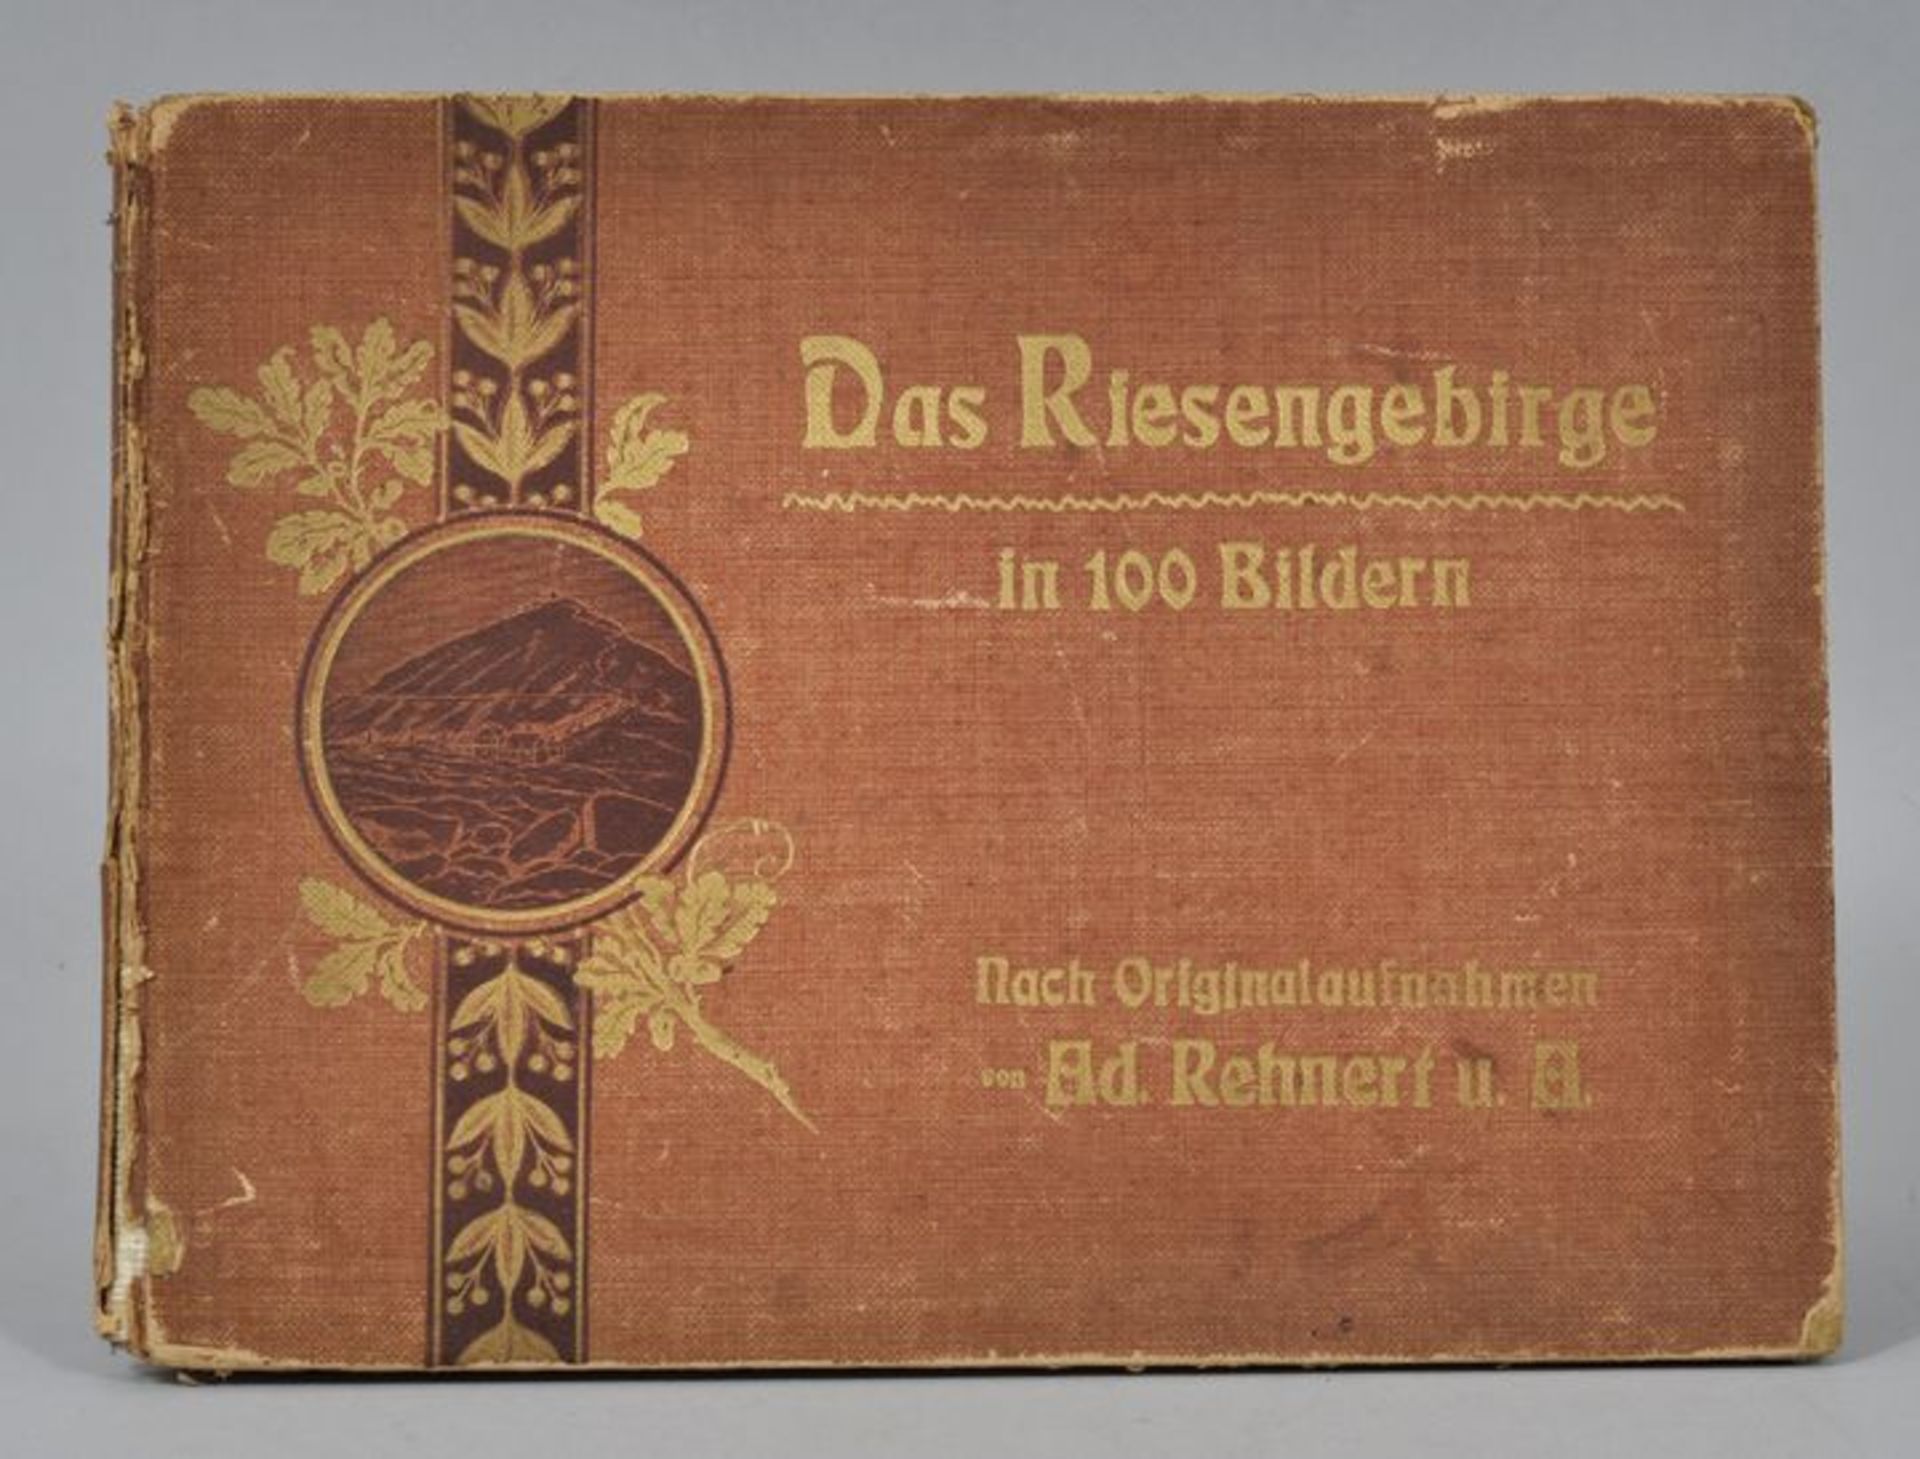 Album: Das Riesengebirge in 100 Bildern. Nach Originalaufnahmen von Ad. Rehnert.